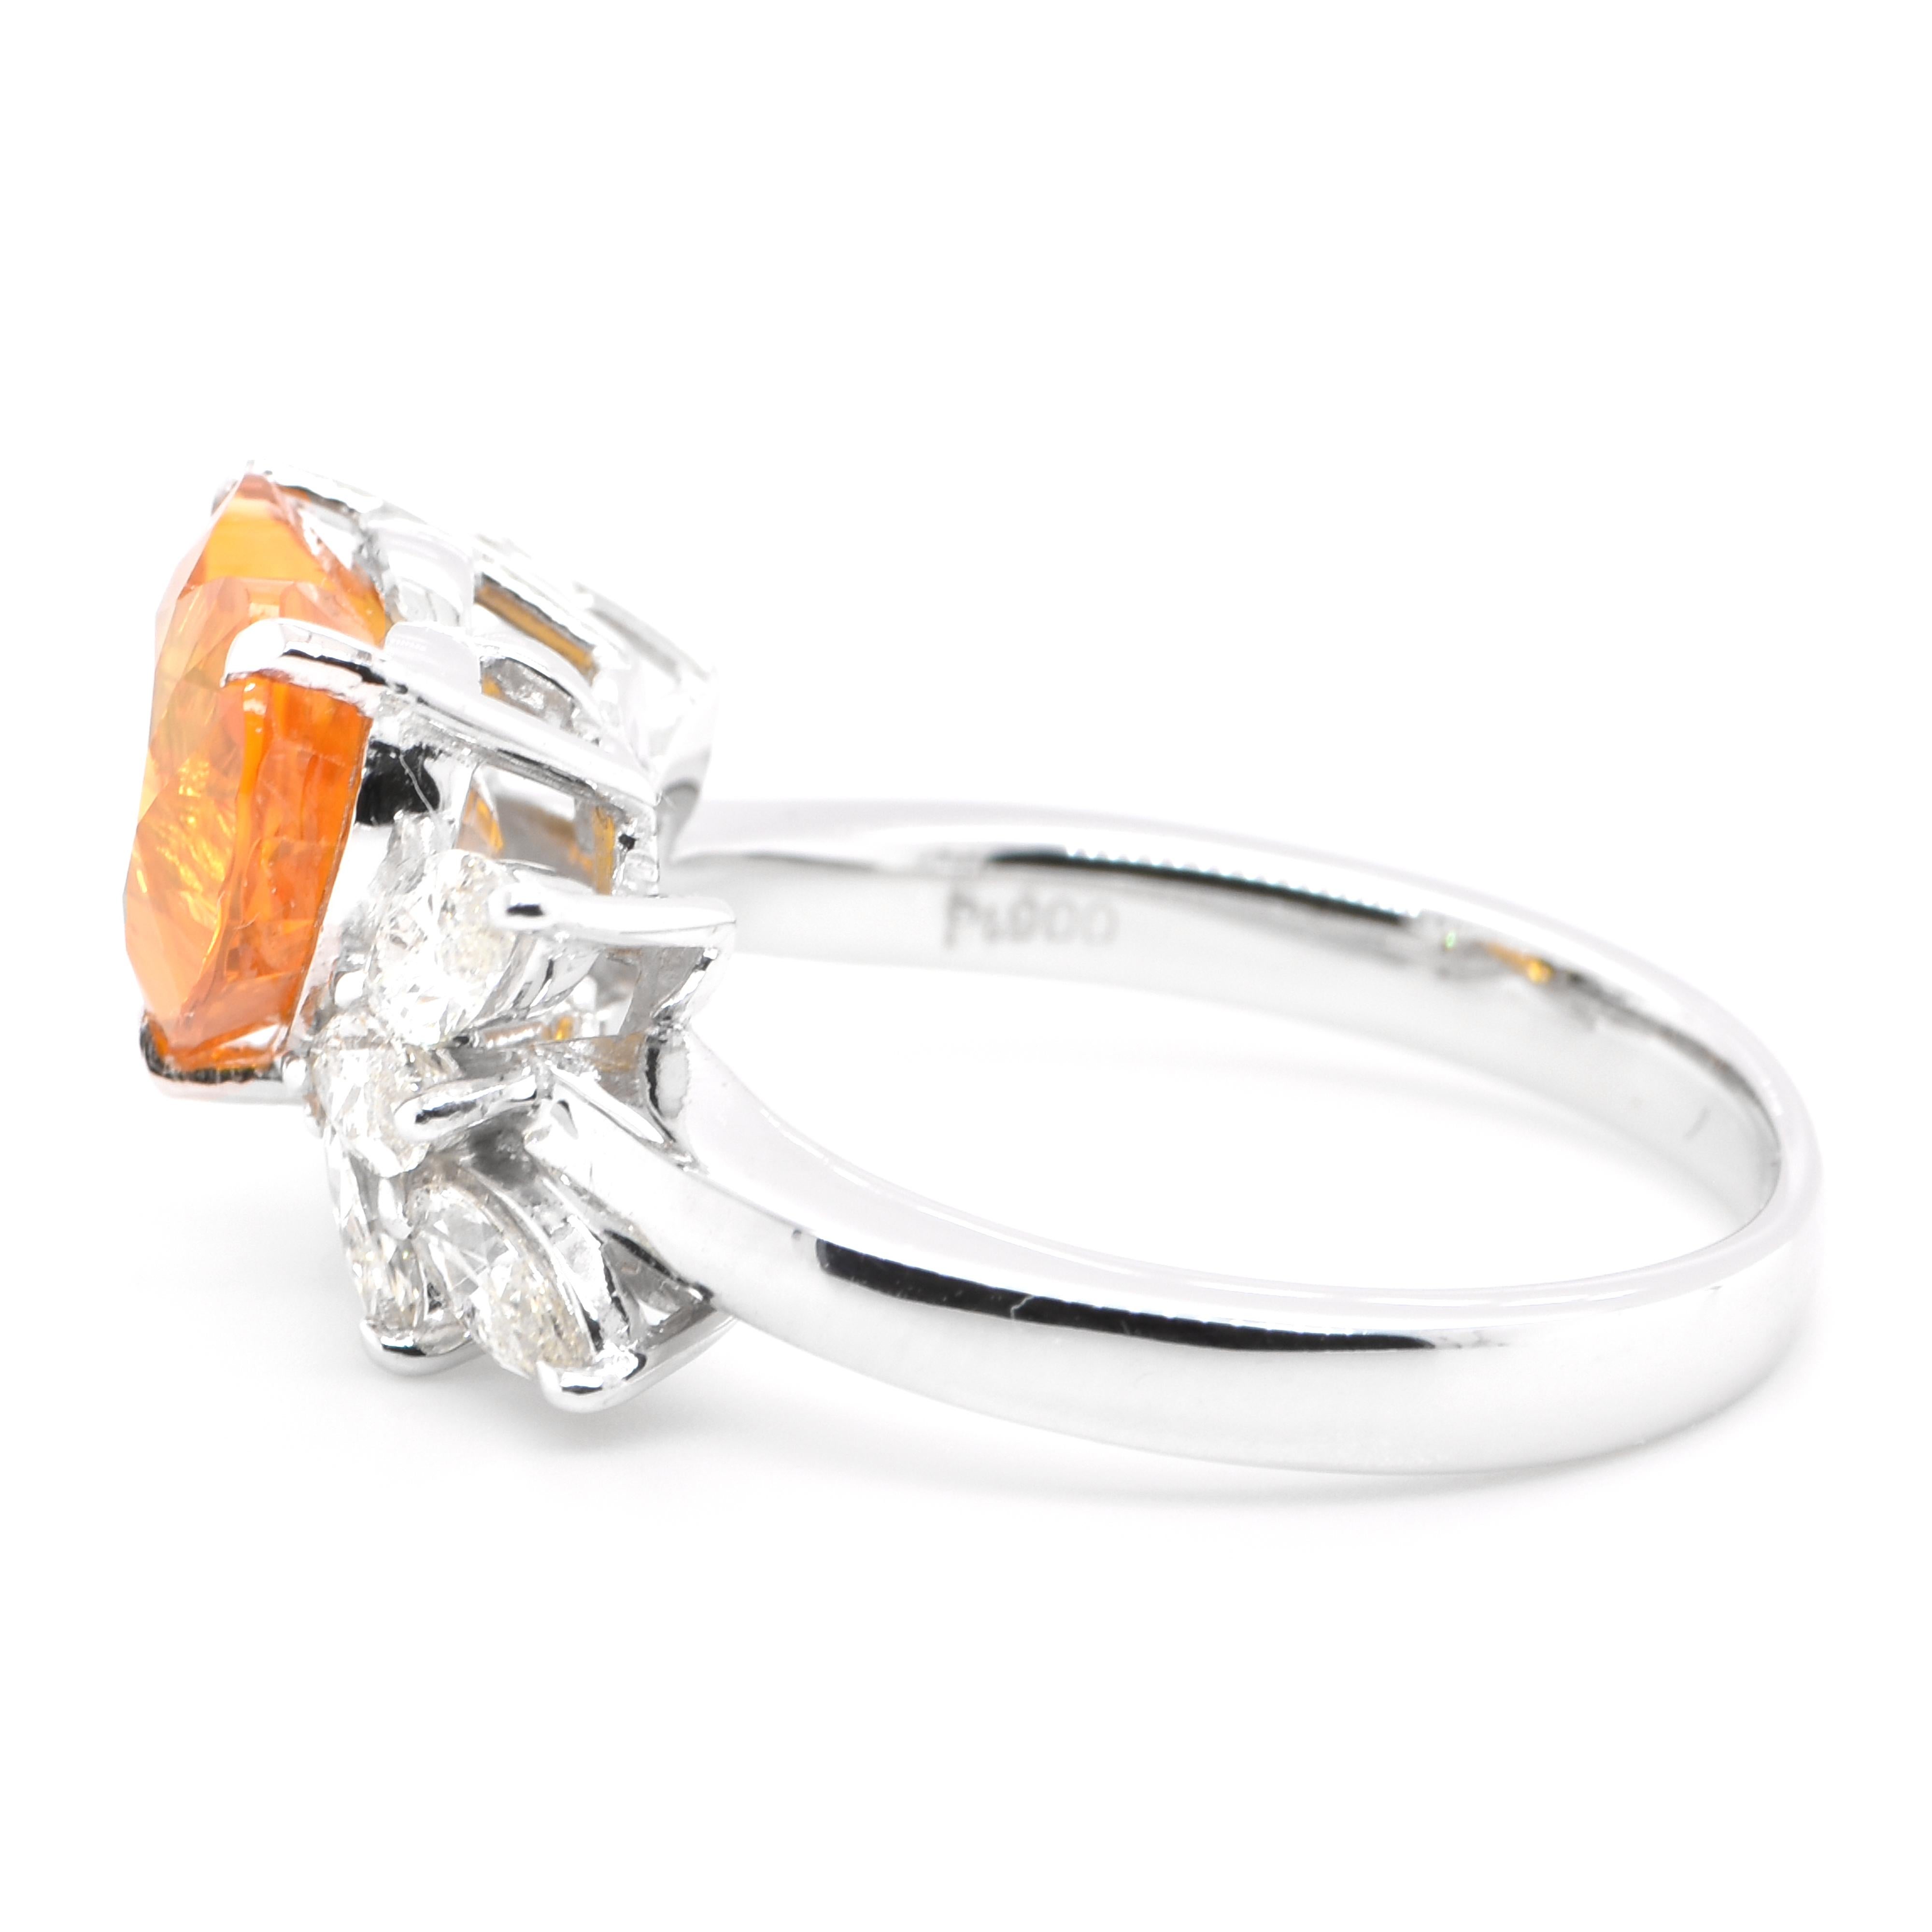 Heart Cut 3.27 Carat Natural Heart-Cut Golden Sapphire and Diamond Ring Set in Platinum